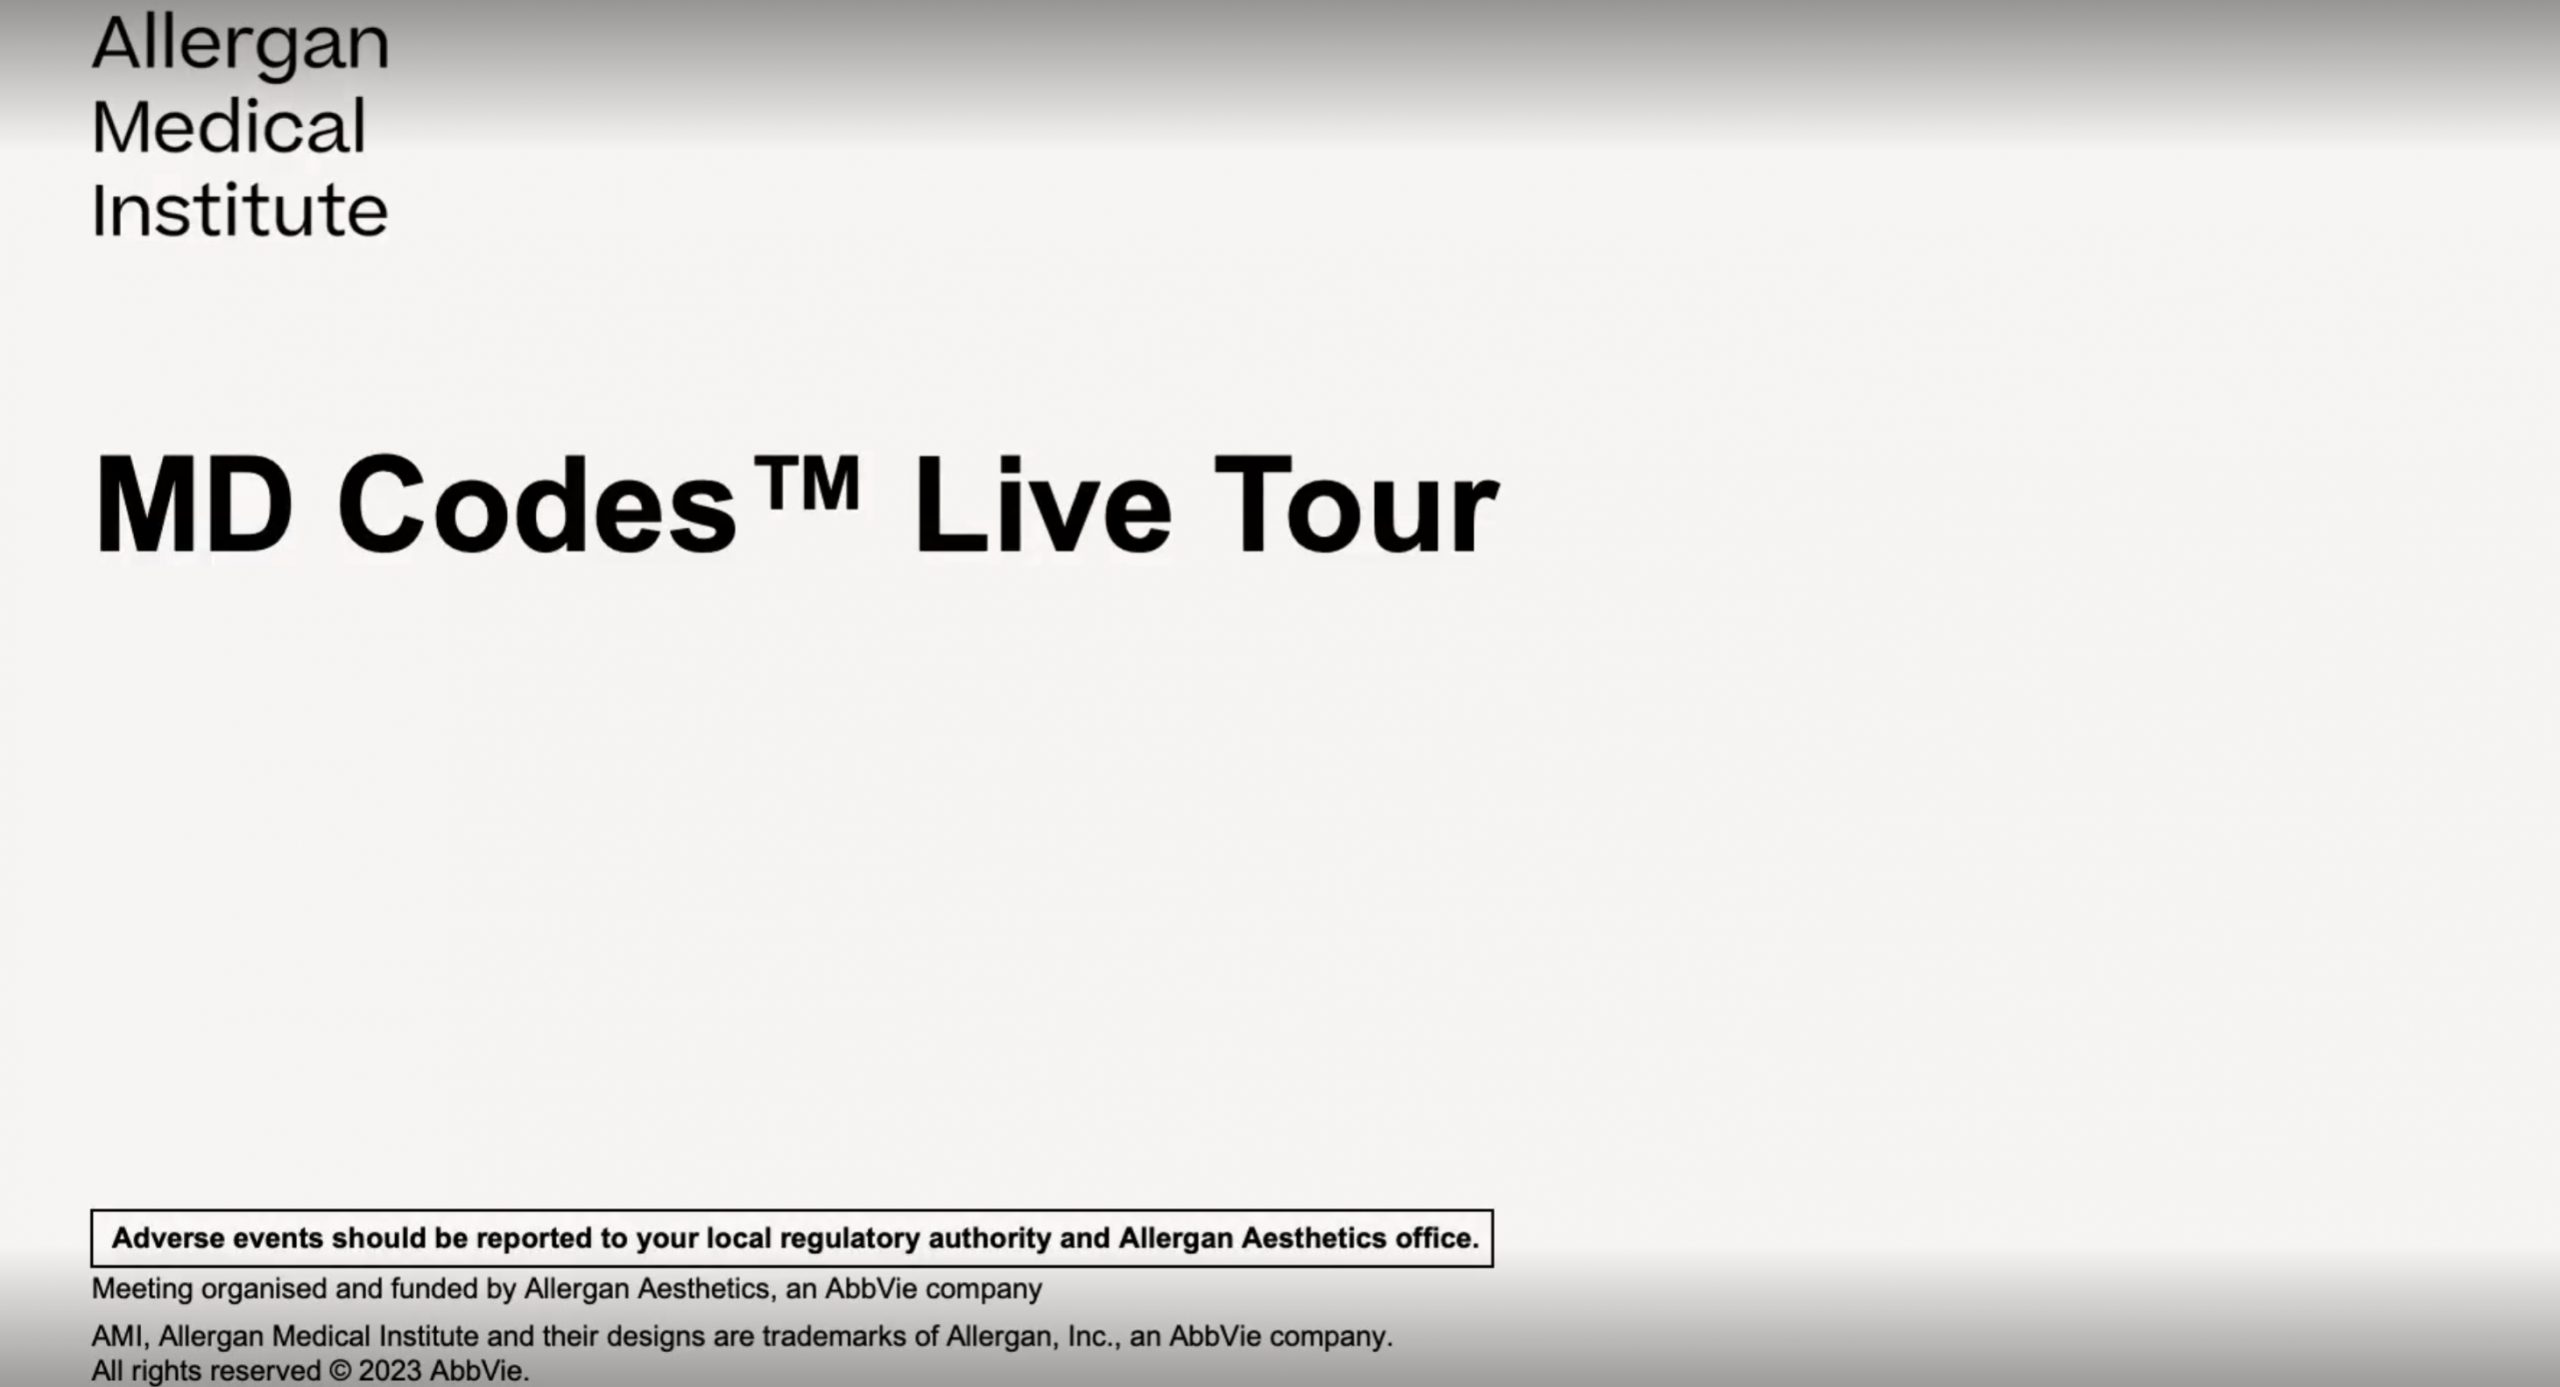 Allergan Medical Institute MD Codes TM Live Tour 2023